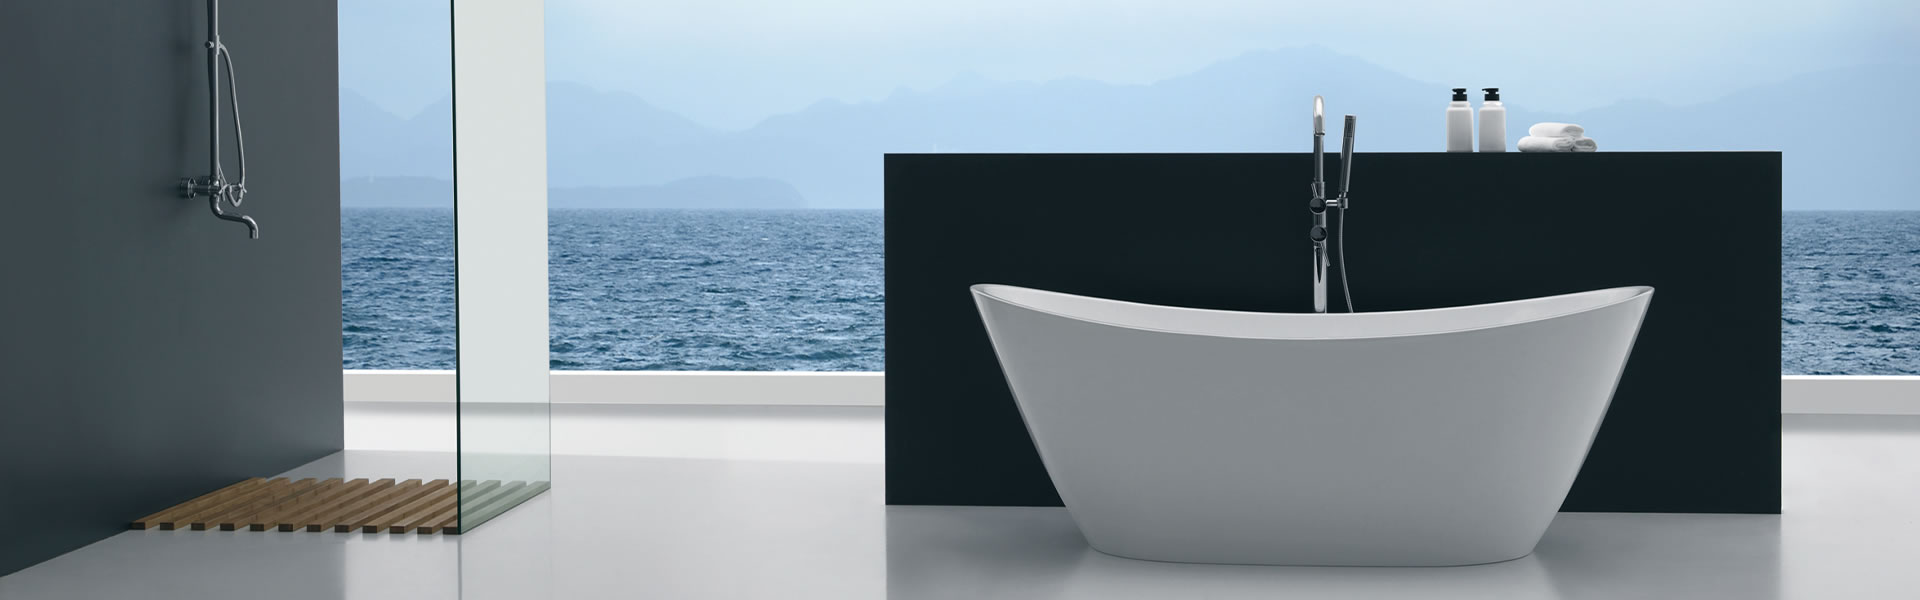 Povratak luksuza: samostojeće kade kao centralni element modernih kupaonica